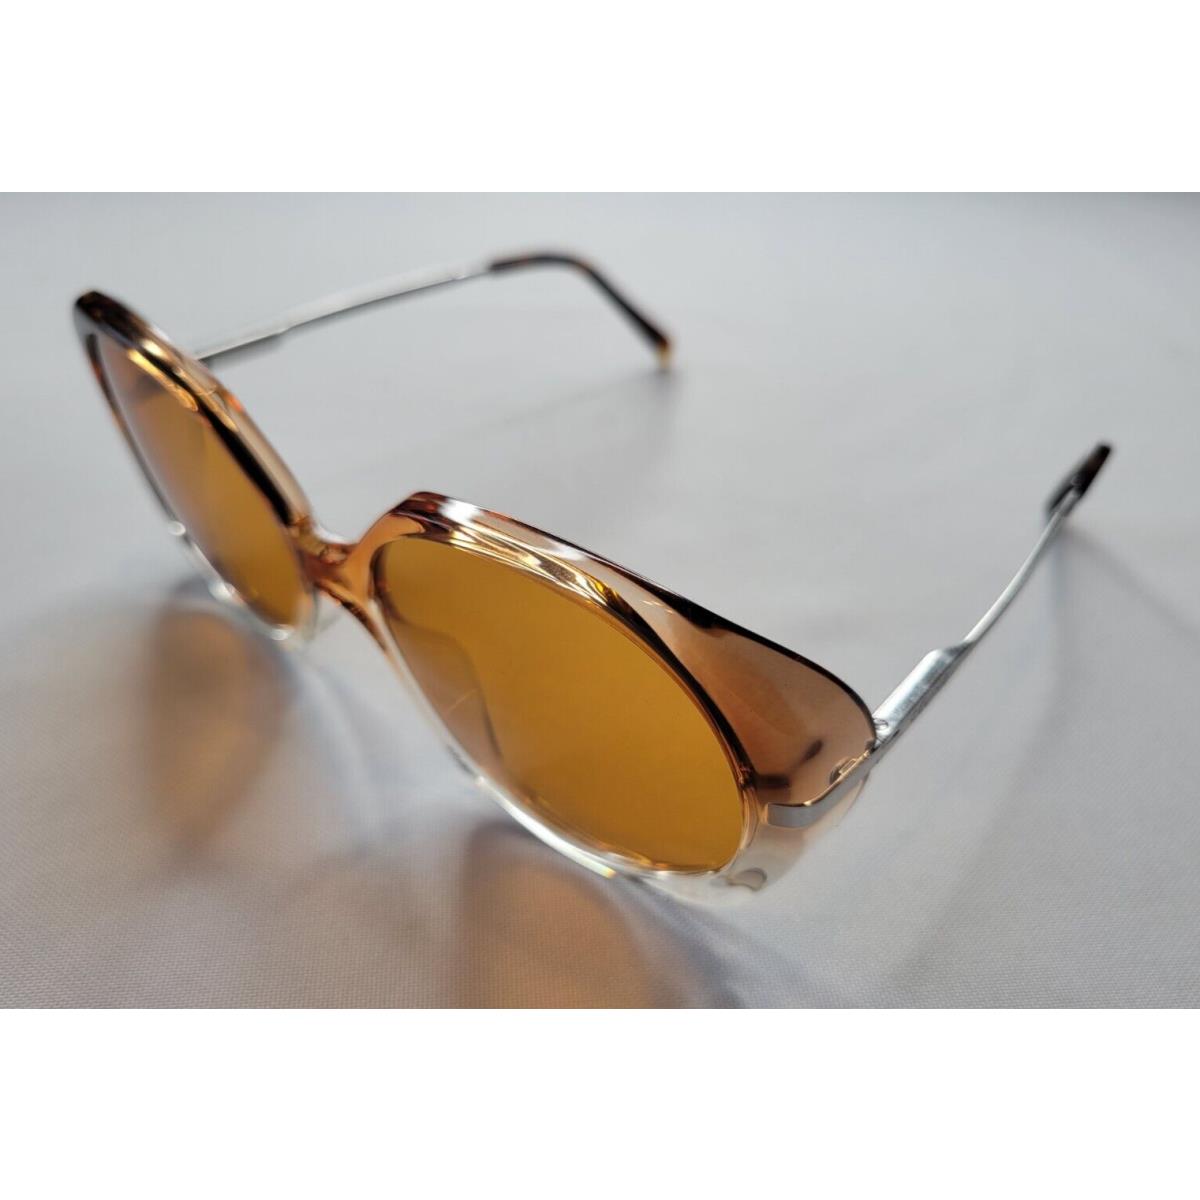 Celine sunglasses  - Brown/Silver Frame, Gray Lens 1